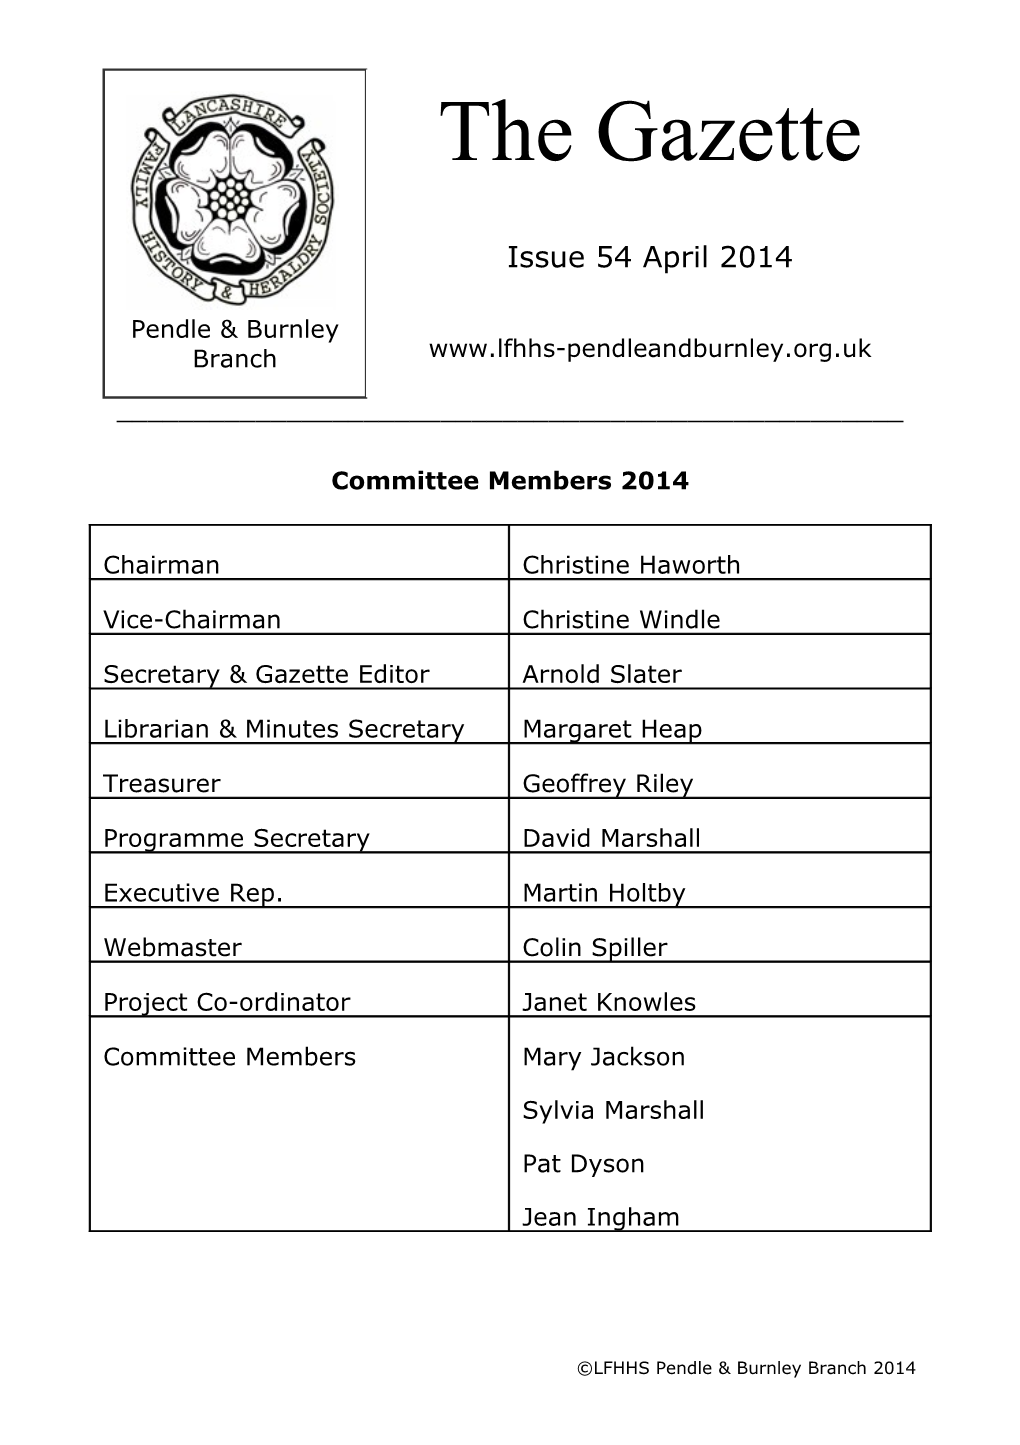 Committee Members 2014